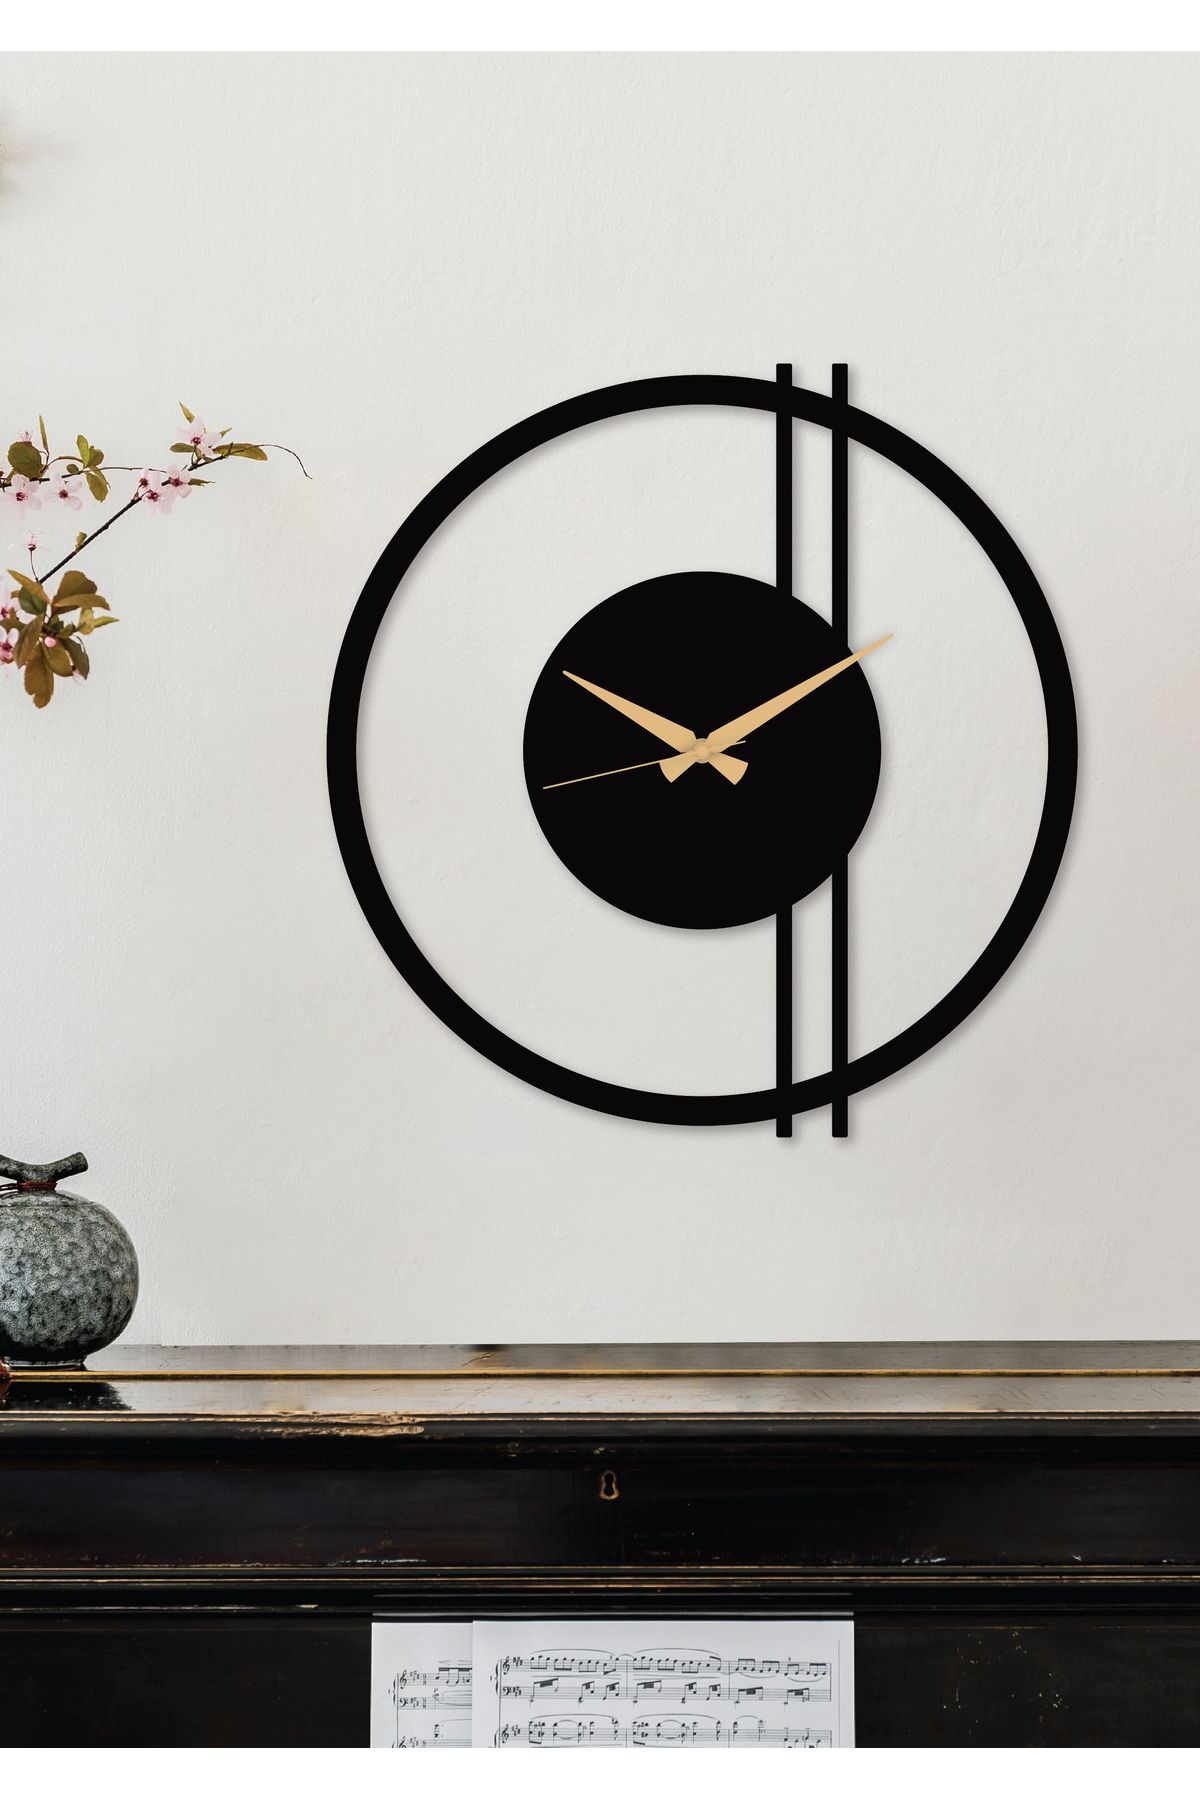 Gowpenart Double Line металлические черные настенные часы - Часы для дома/офиса - Подарочные часы - 70 x 68 см DoubleLineDS070